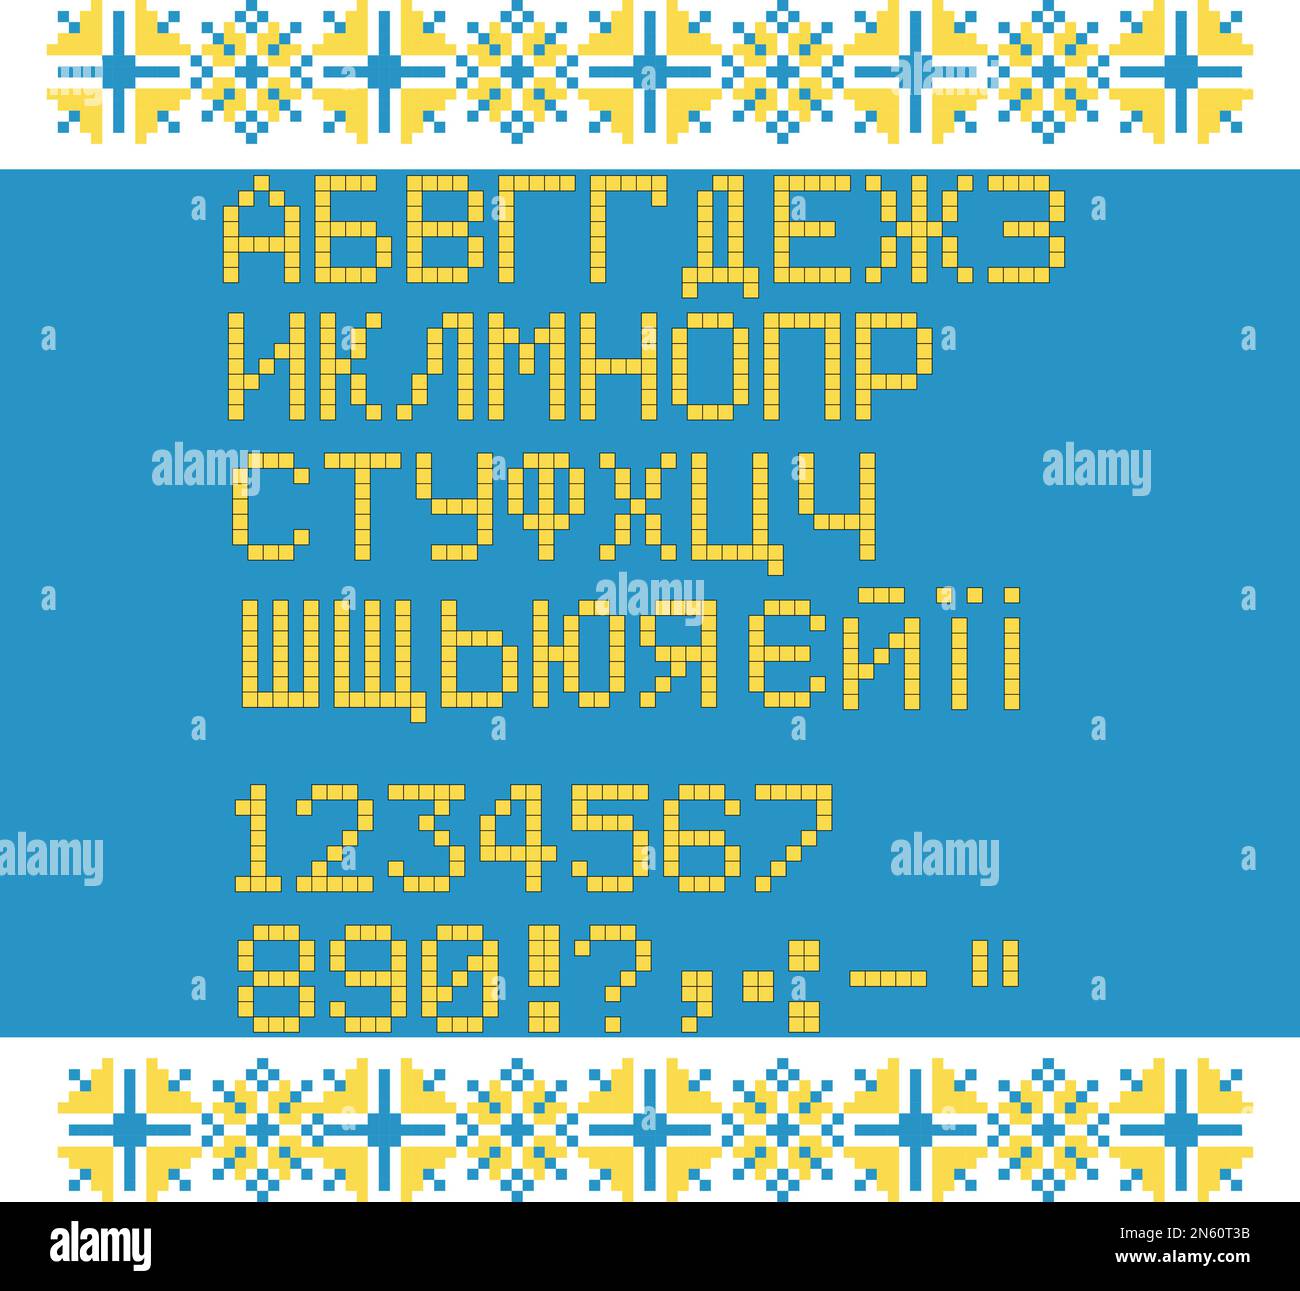 Alphabet cyrillique en ukrainien écrit en jaune et bleu. Drapeau ukrainien Illustration de Vecteur